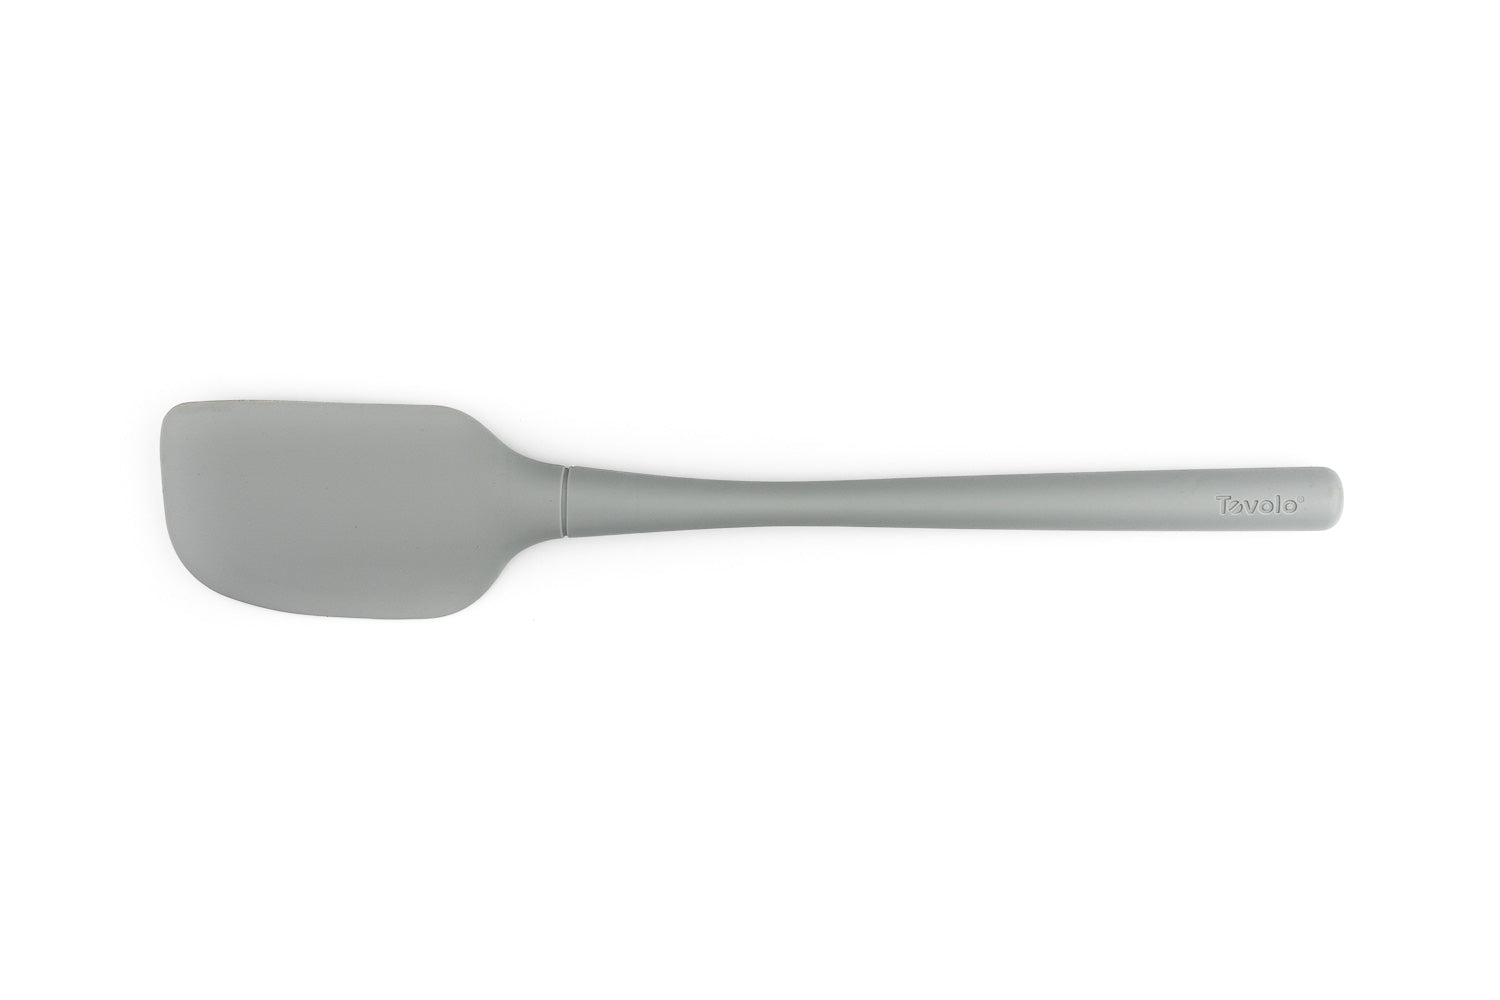 Tovolo - Flex-Core All Silicone Spoonula - Charcoal